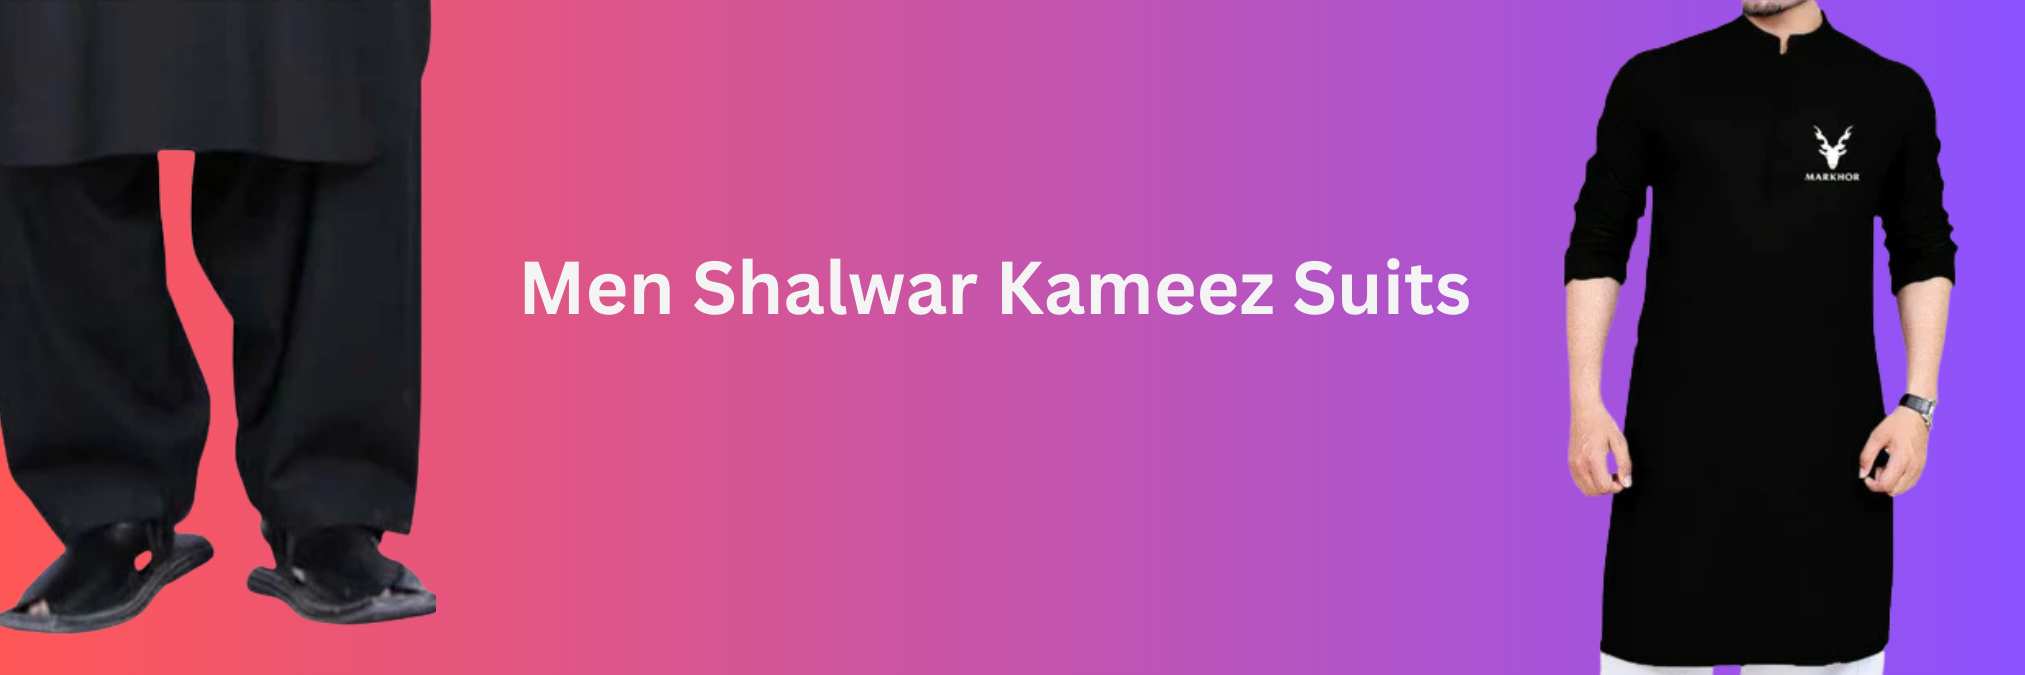 Men Shalwar Kameez Suits